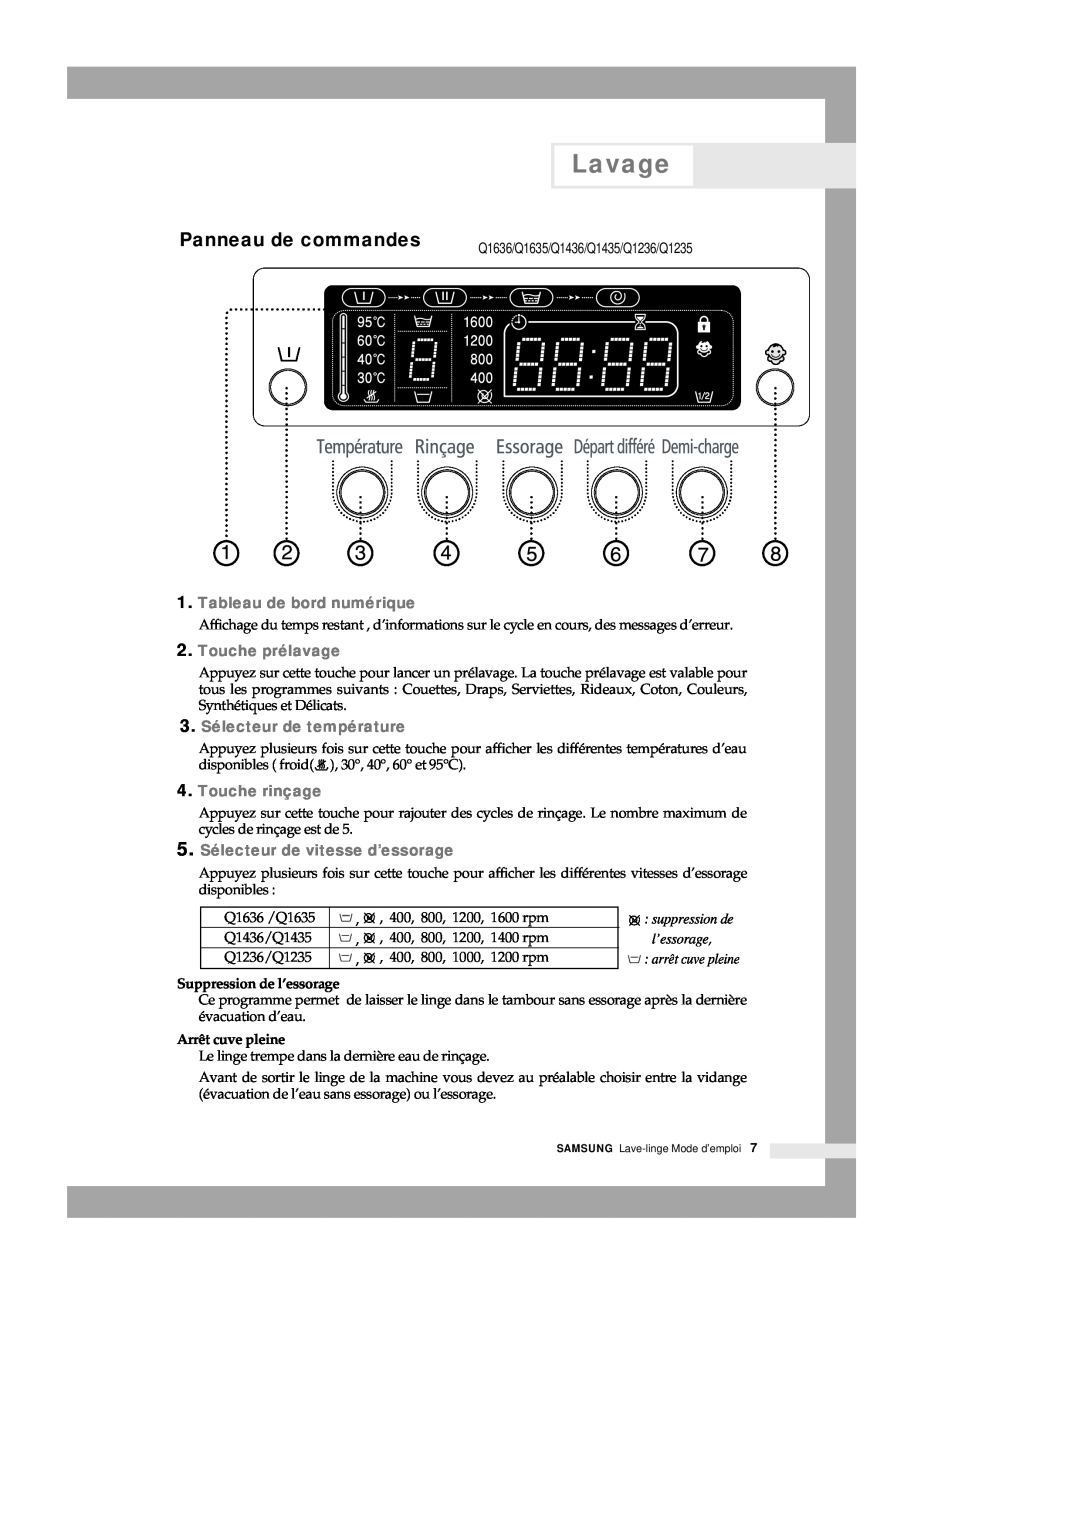 Samsung Q1435VGW1/XEF manual Panneau de commandes, Tableau de bord numérique, Touche prélavage, 3. Sélecteur de température 